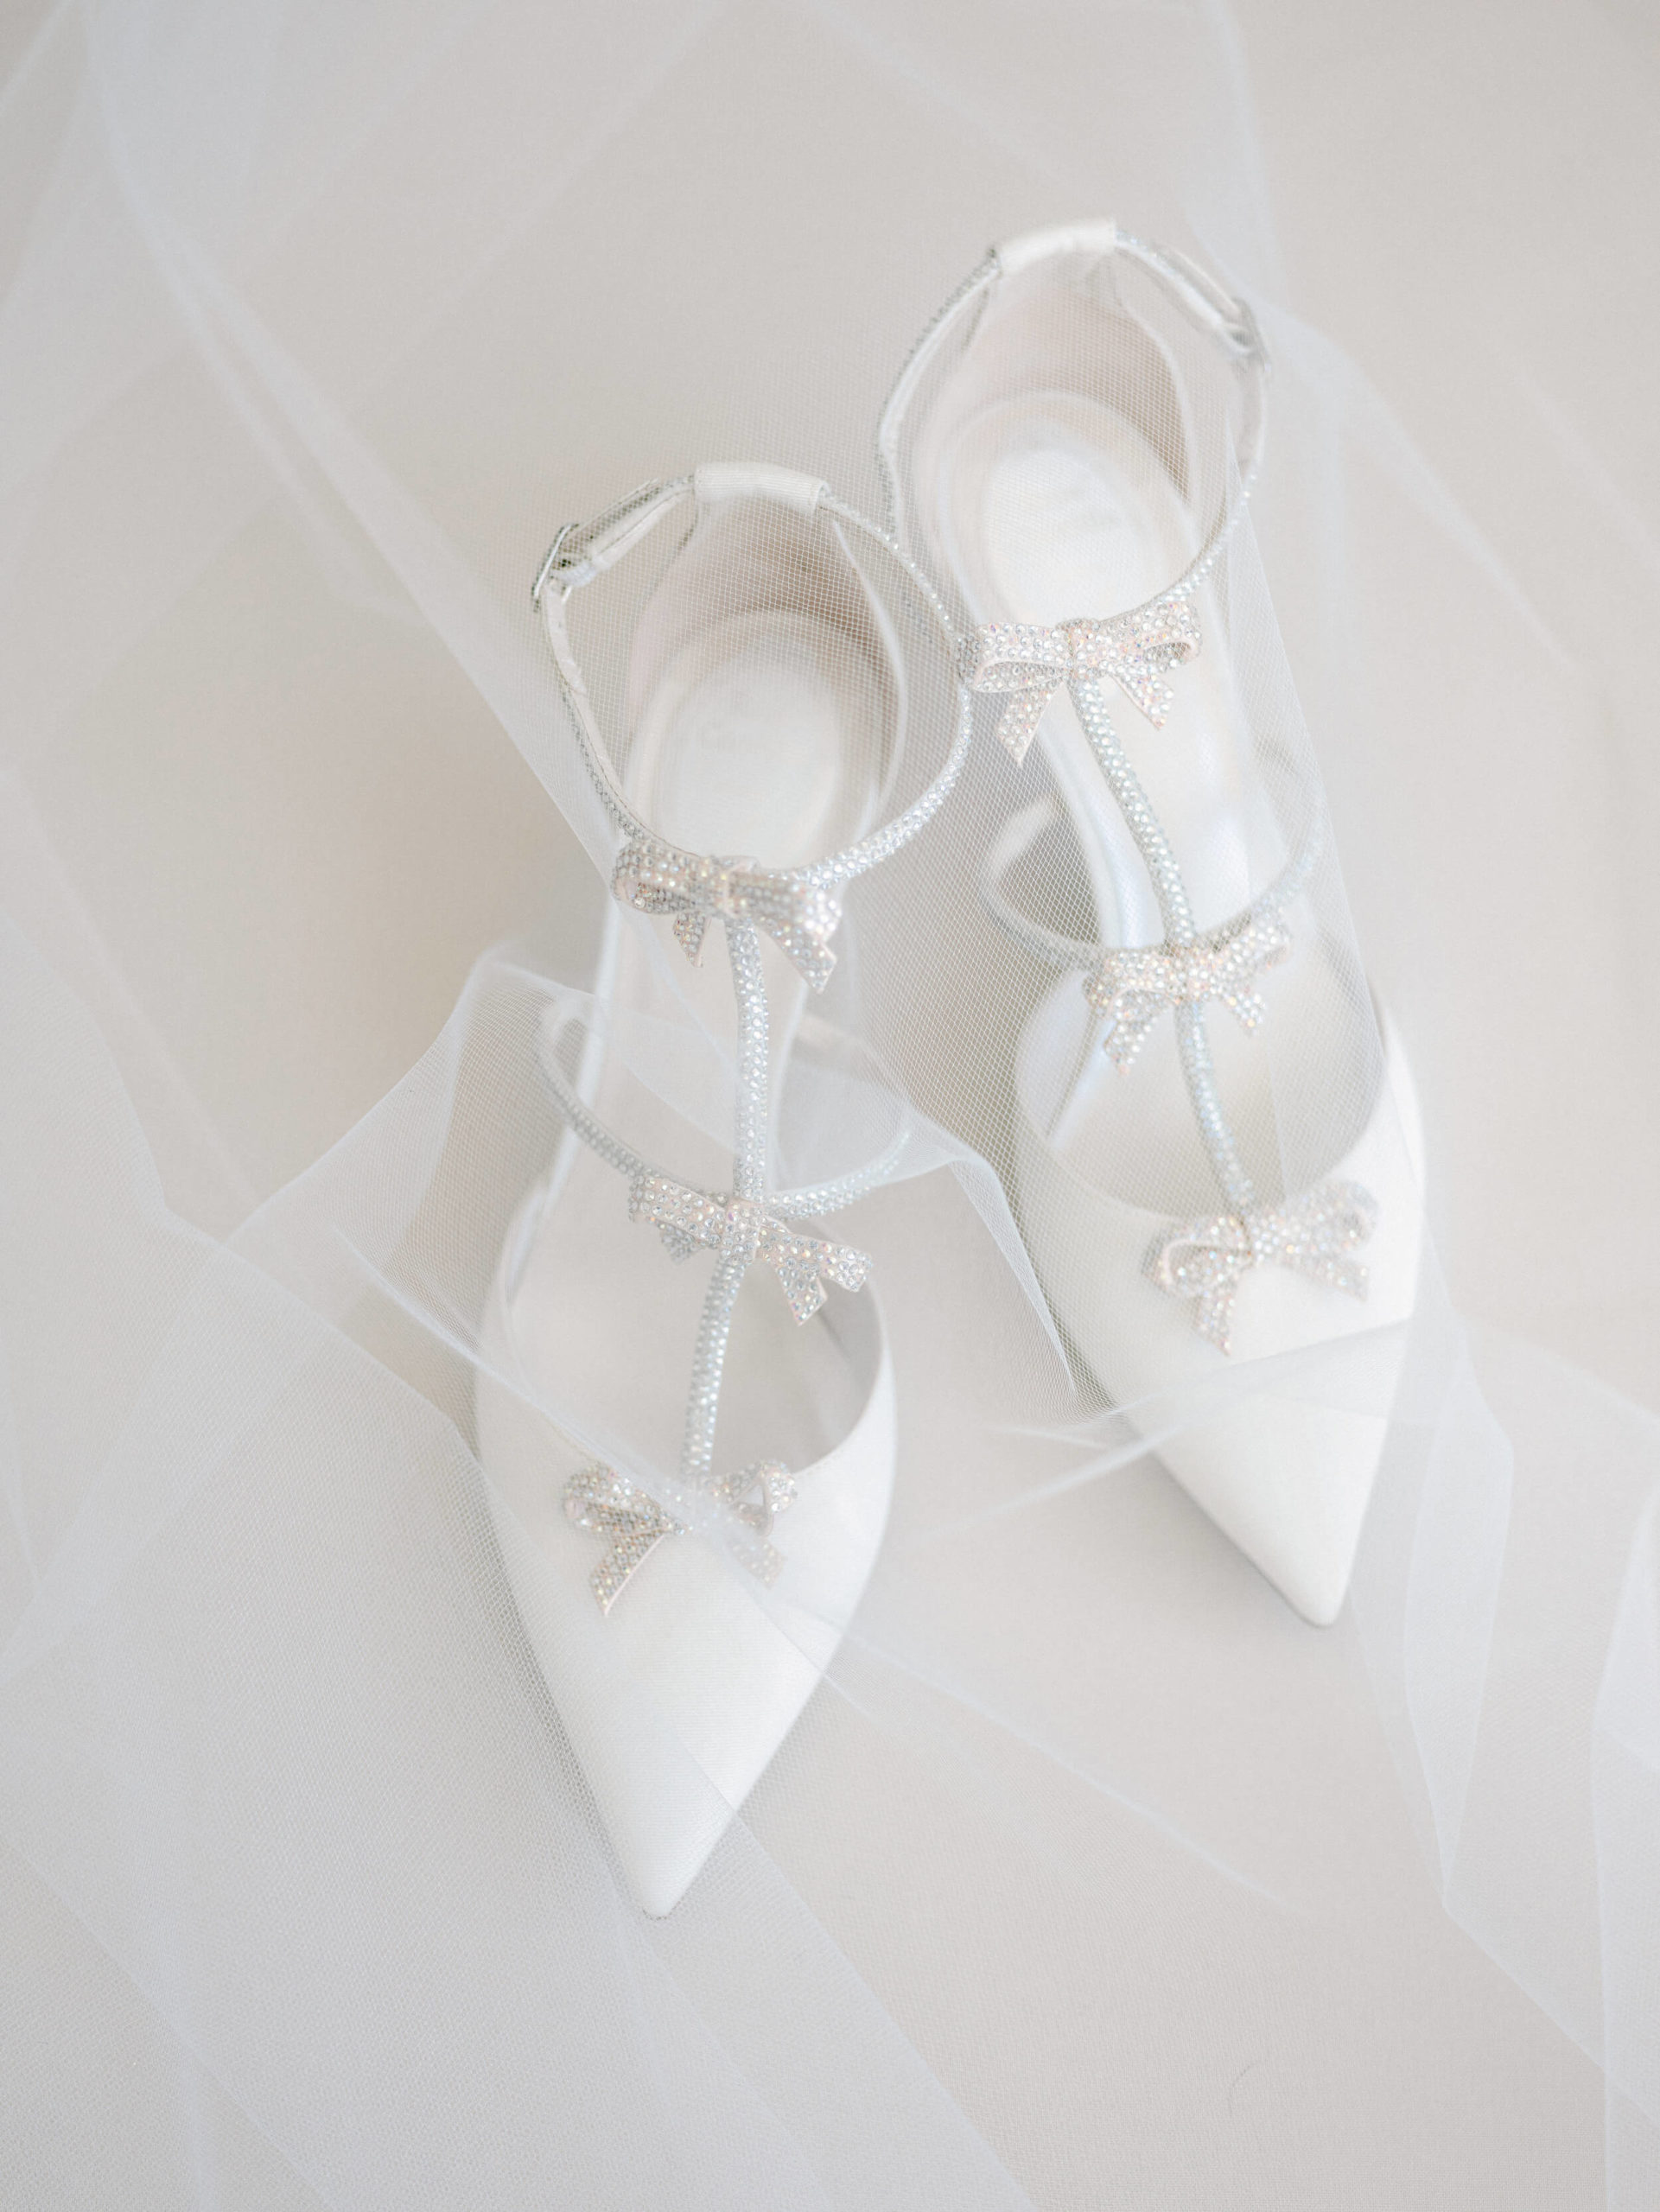 Rene Caovilla white formal bridal shoes